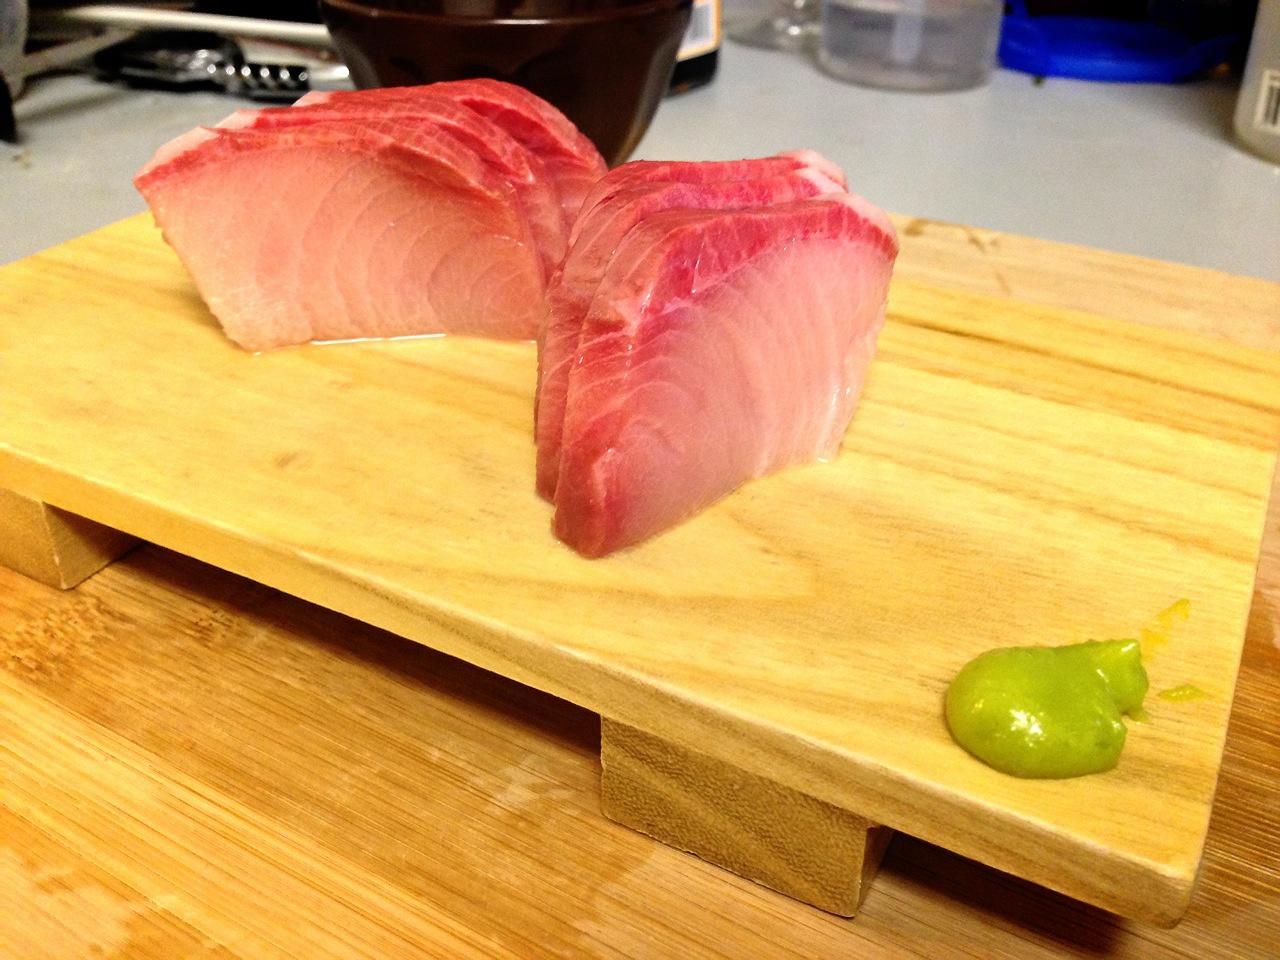 黄尾鱼 鰤 刺身的做法步骤图 怎么做好吃 Gh 翎 下厨房